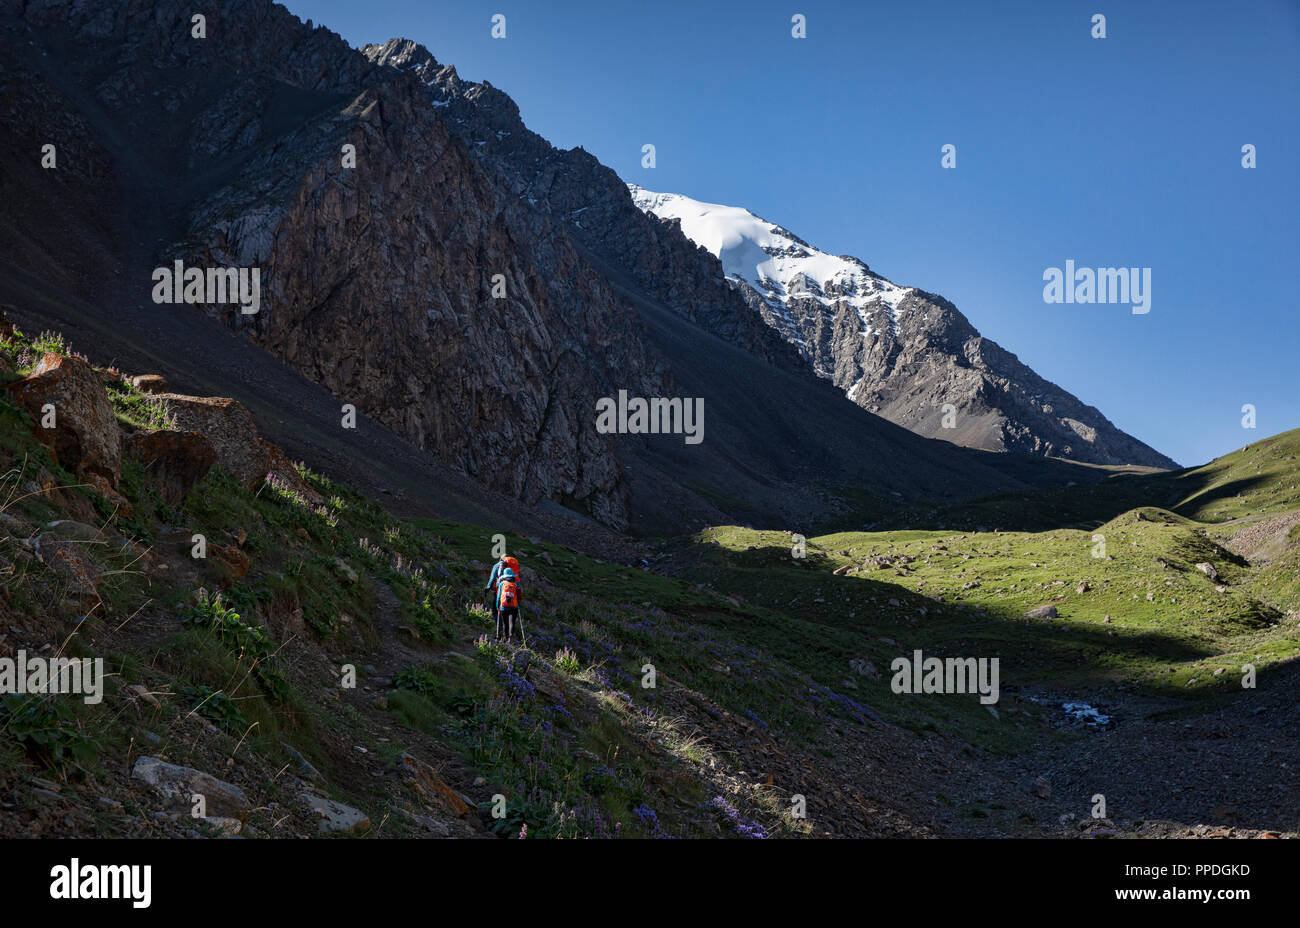 Die unglaubliche Höhen von Alay Trek im Südwesten Kirgisistan, die in 4 3000+ Meter überschreitet. Stockfoto